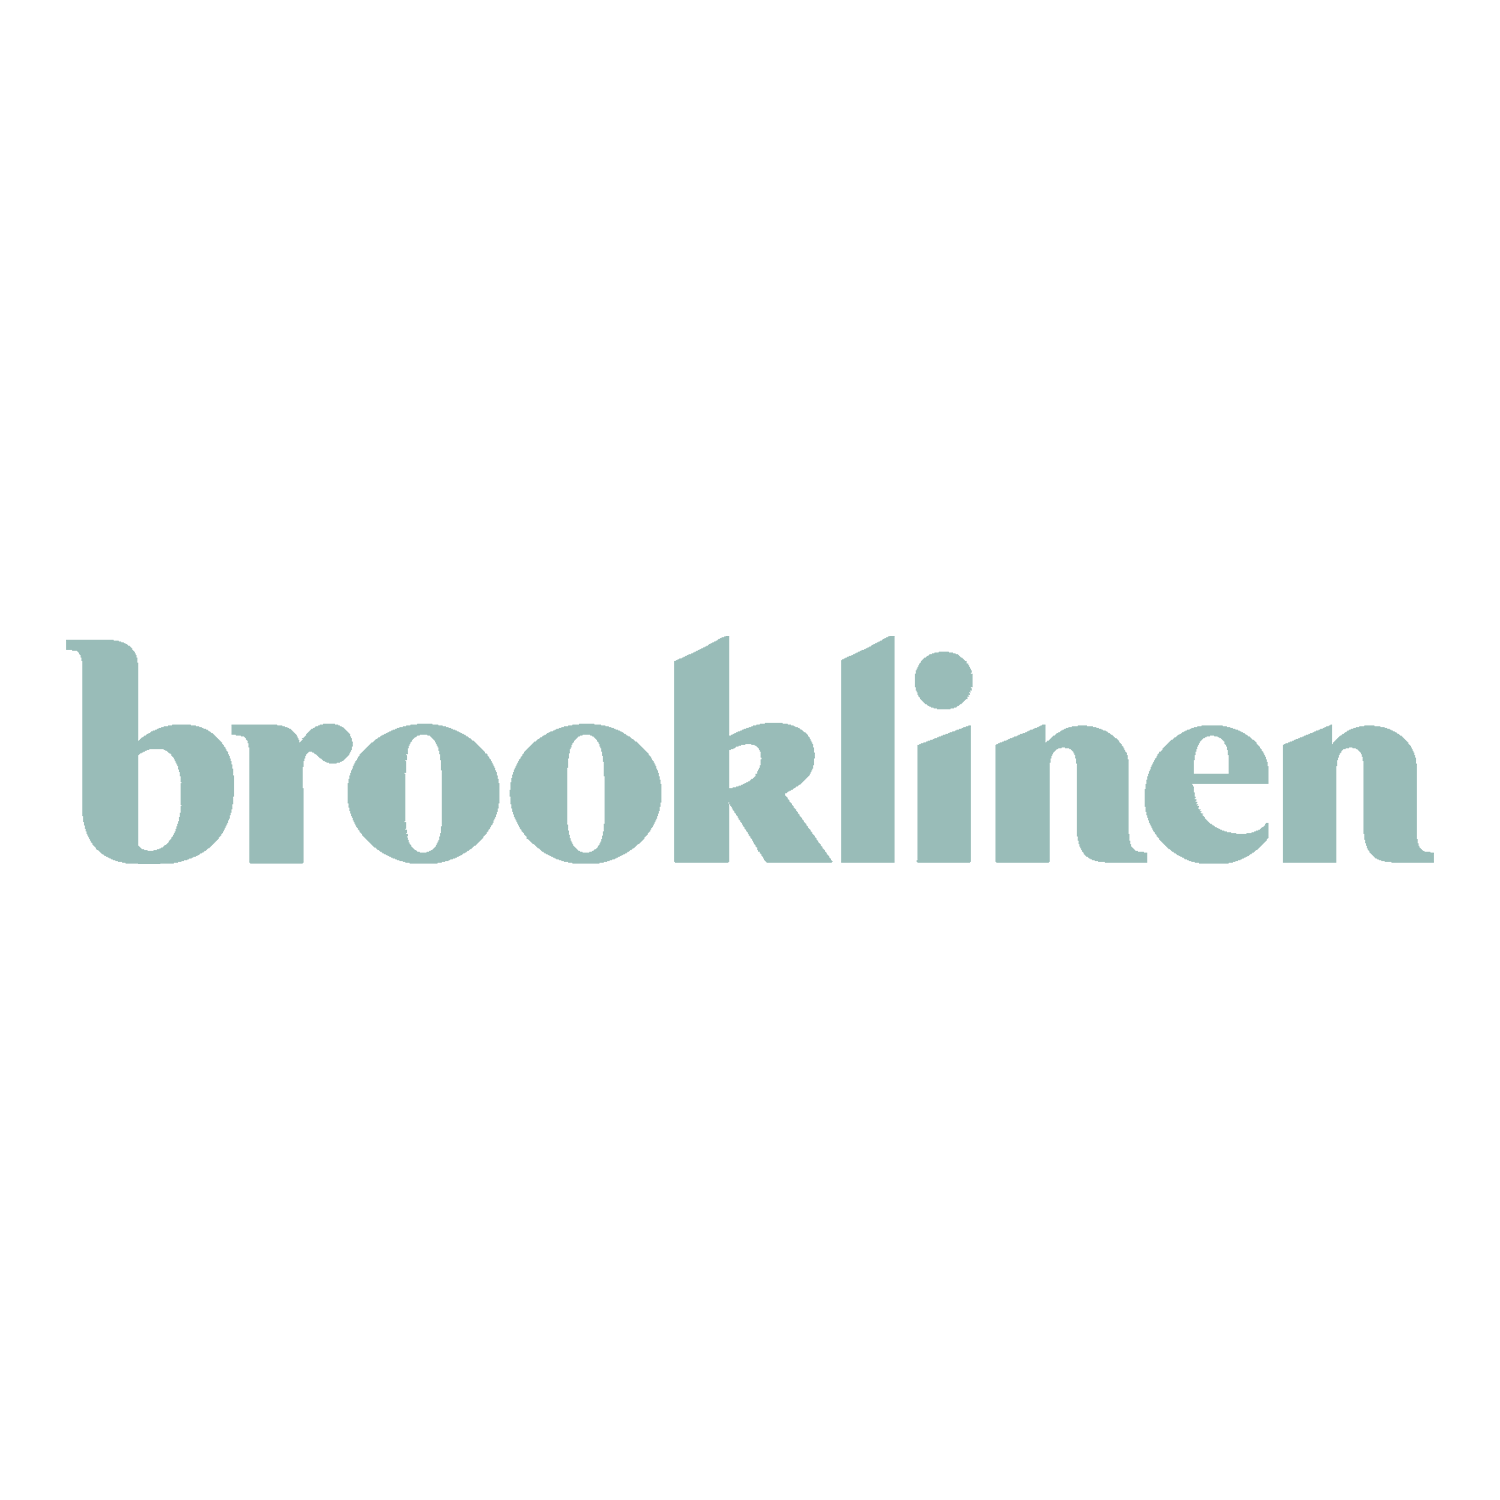 brooklinen_logo.png